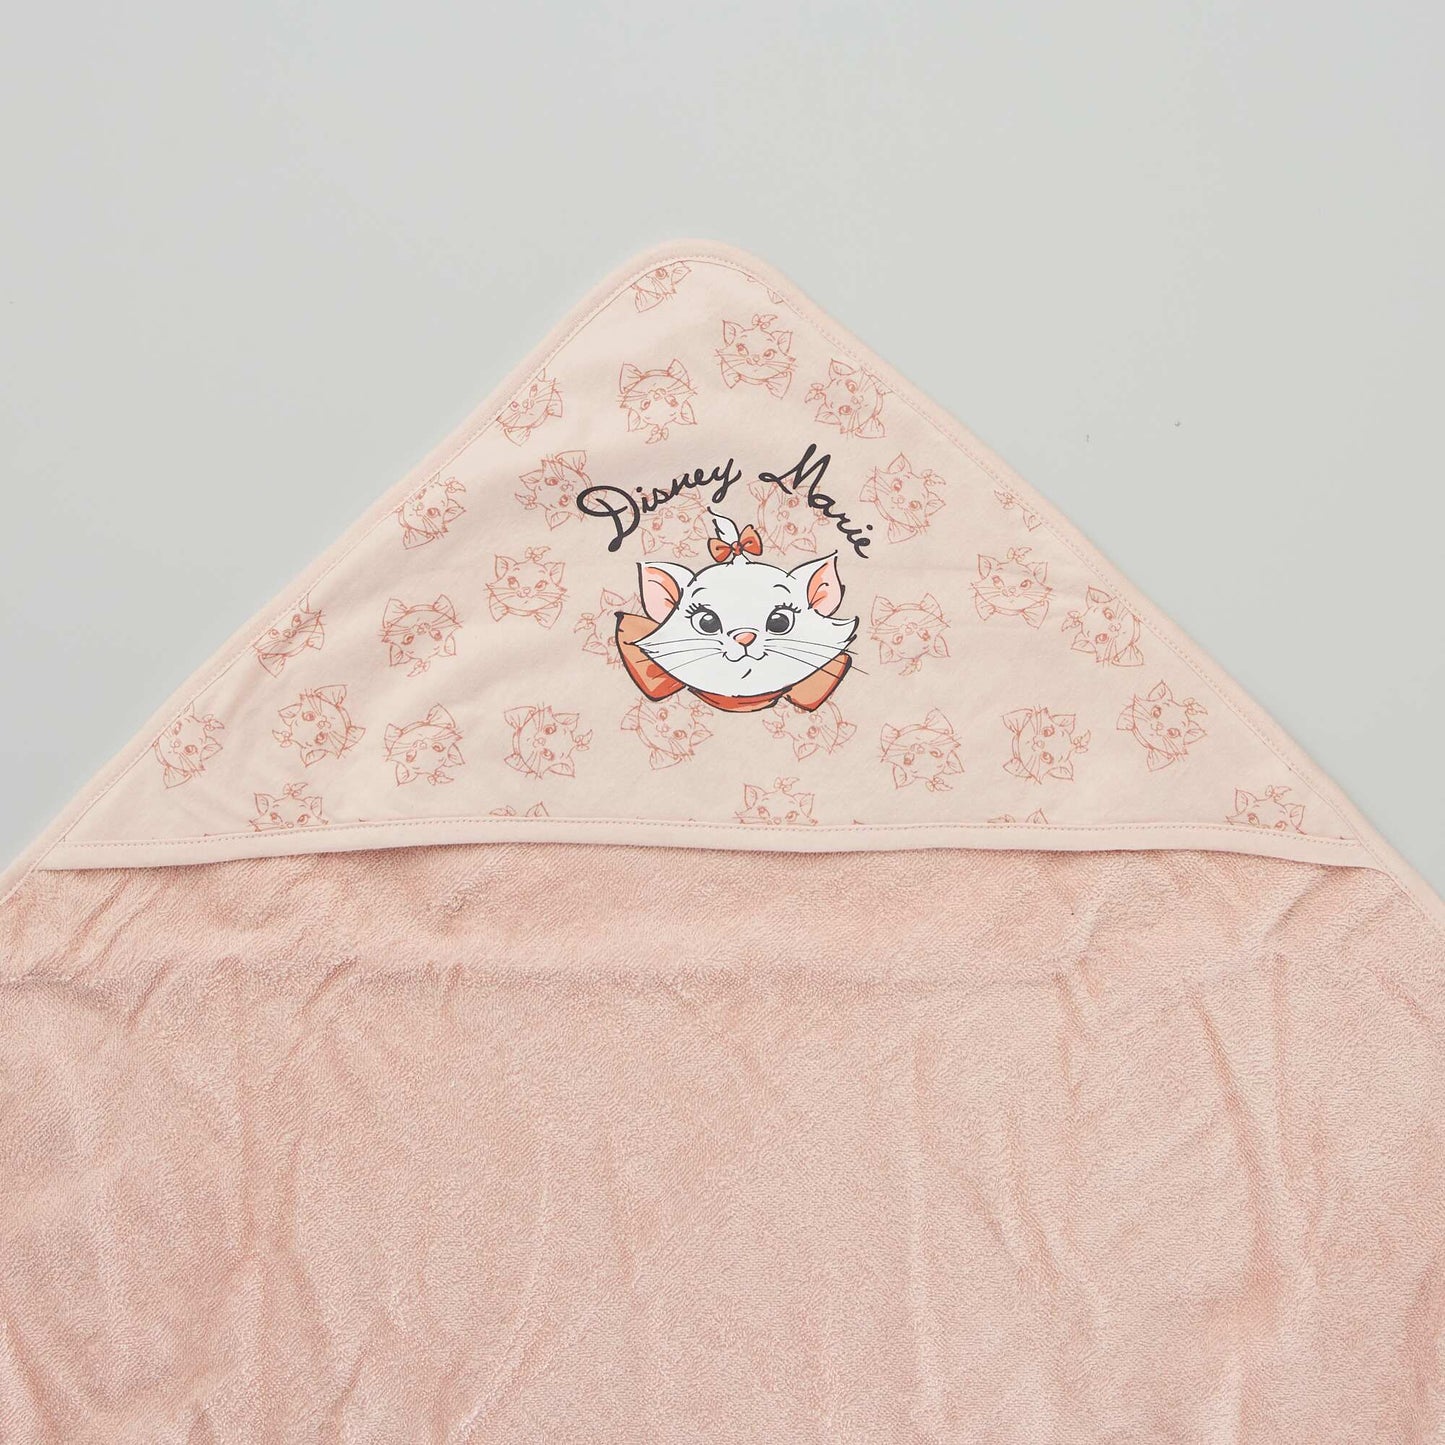 'Disney' hooded bath towel PINK